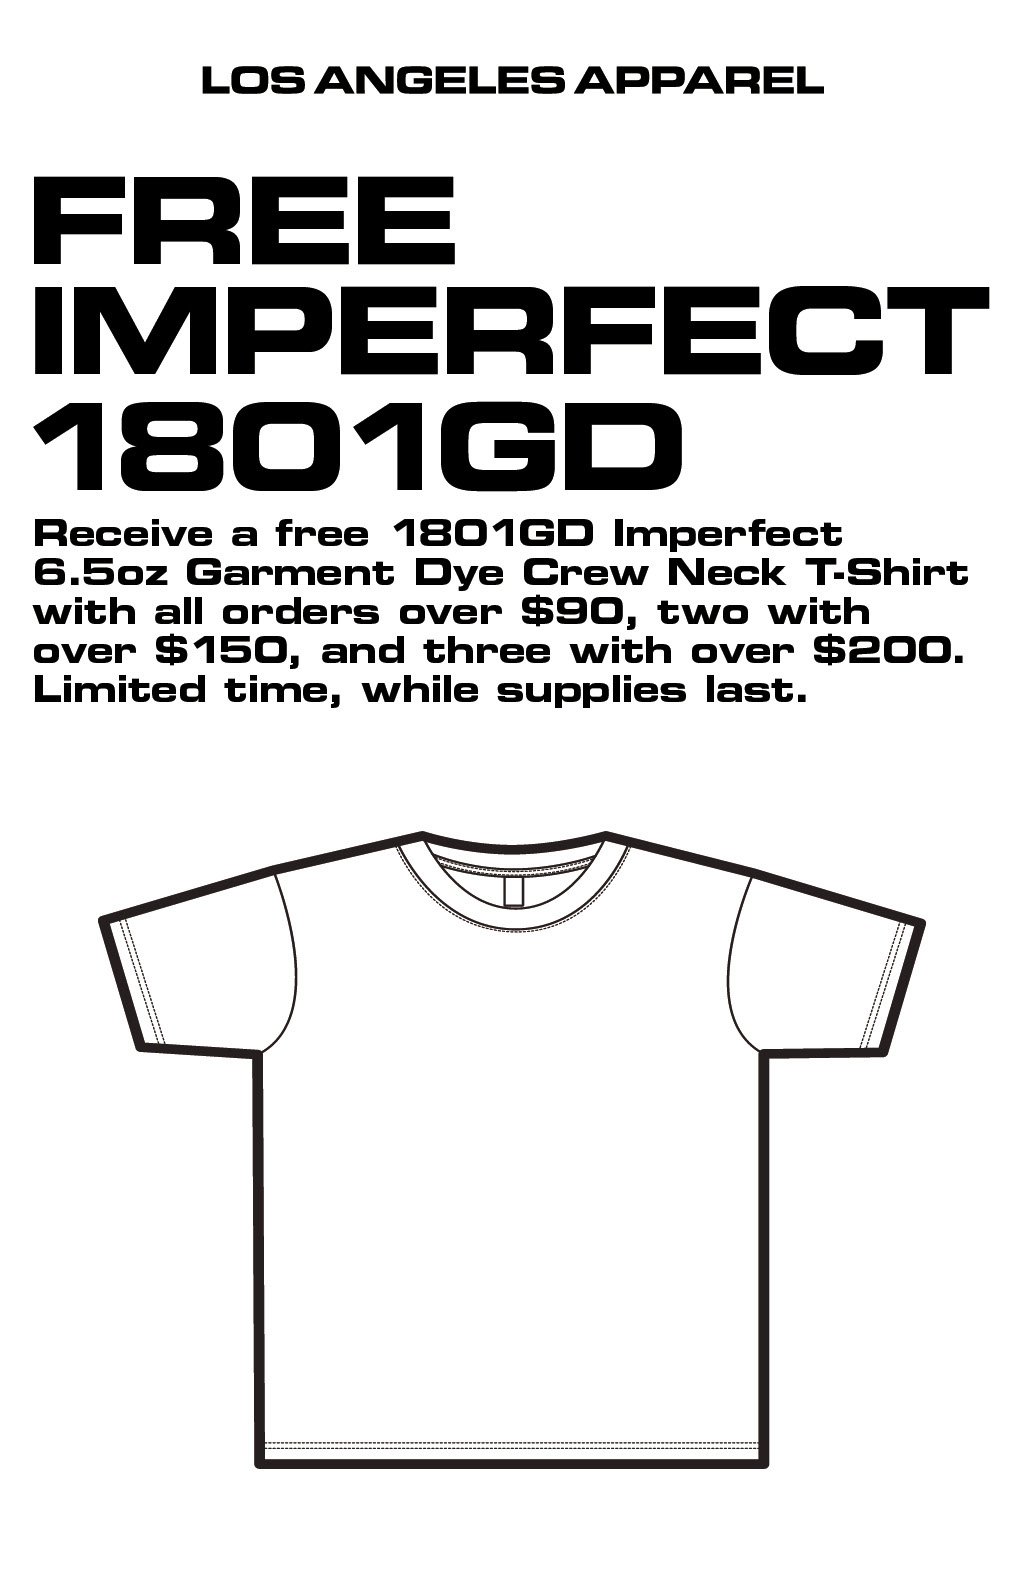 Personalized T-shirt Kleding Unisex kinderkleding Tops & T-shirts T-shirts T-shirts met print 